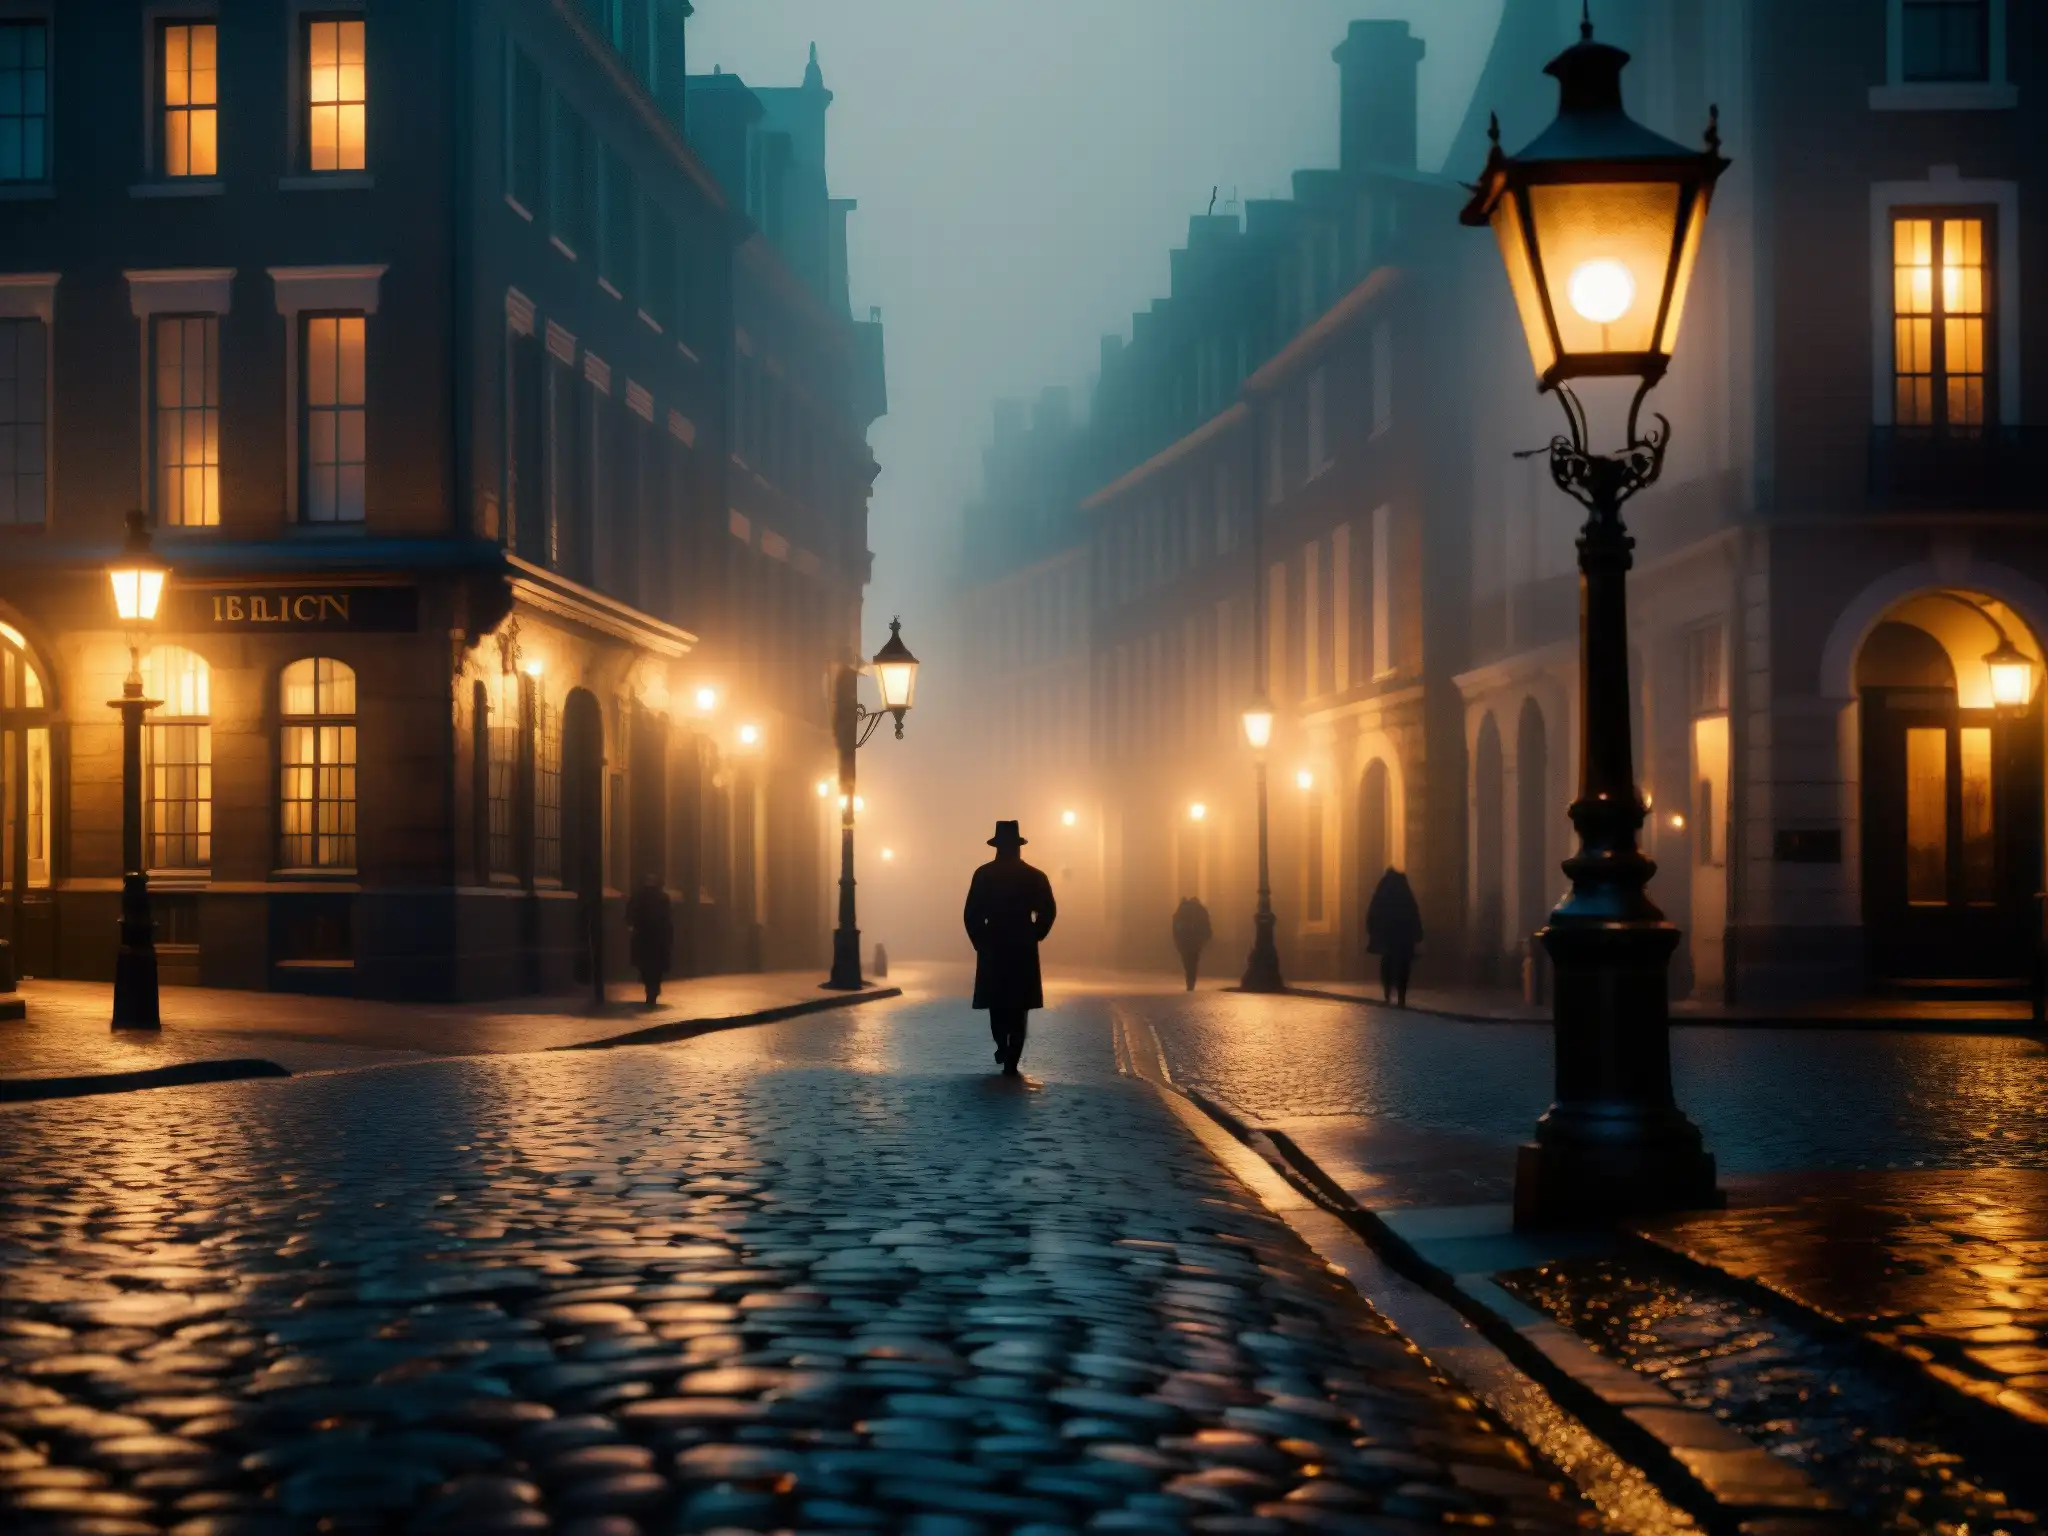 Una calle misteriosa y antigua iluminada por farolas, donde las siluetas se desvanecen entre la niebla